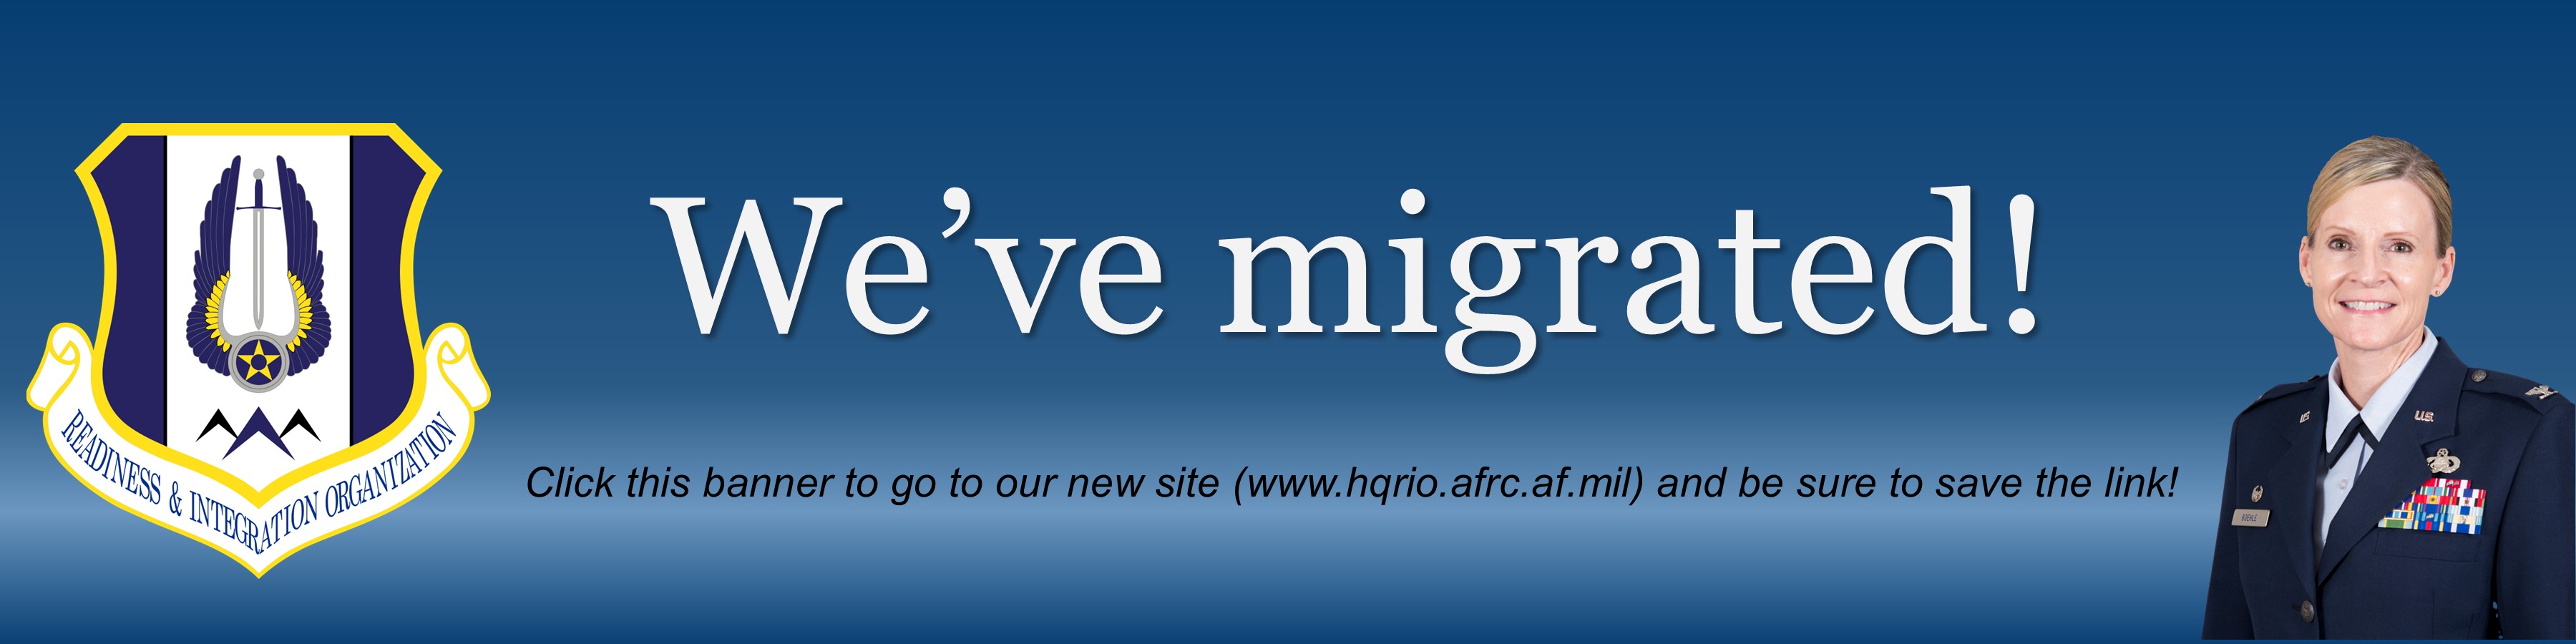 HQ RIO website migration banner link